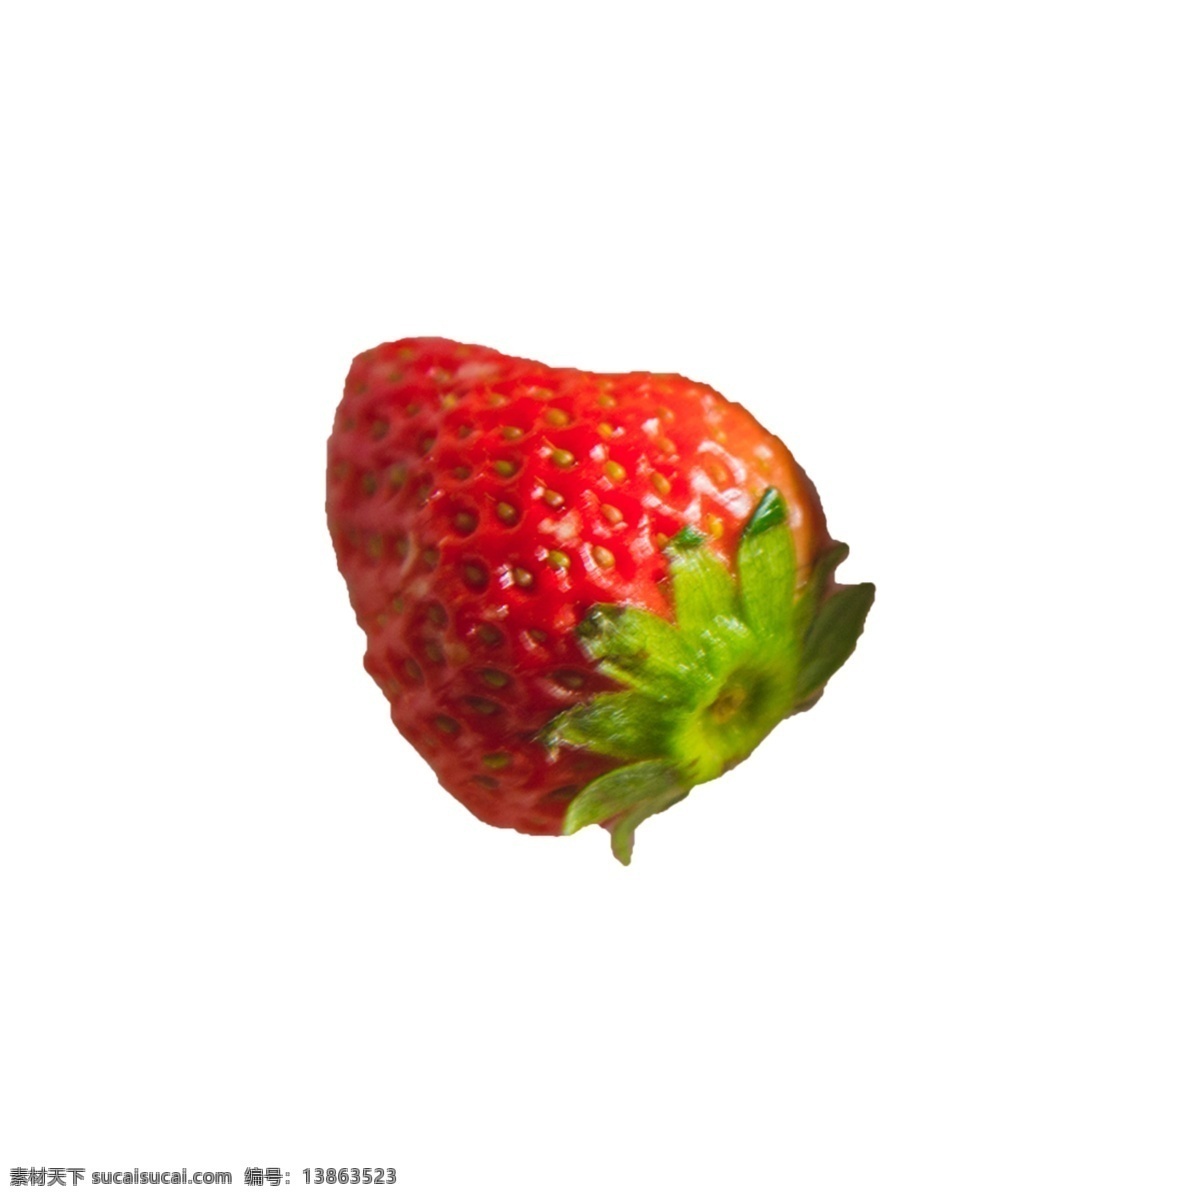 颗 草莓 实拍 免 抠 一颗草莓 水果 新鲜实拍 红颜大草莓 摆拍 奶油草莓 绿叶 植物 叶子 清甜 维生素 营养